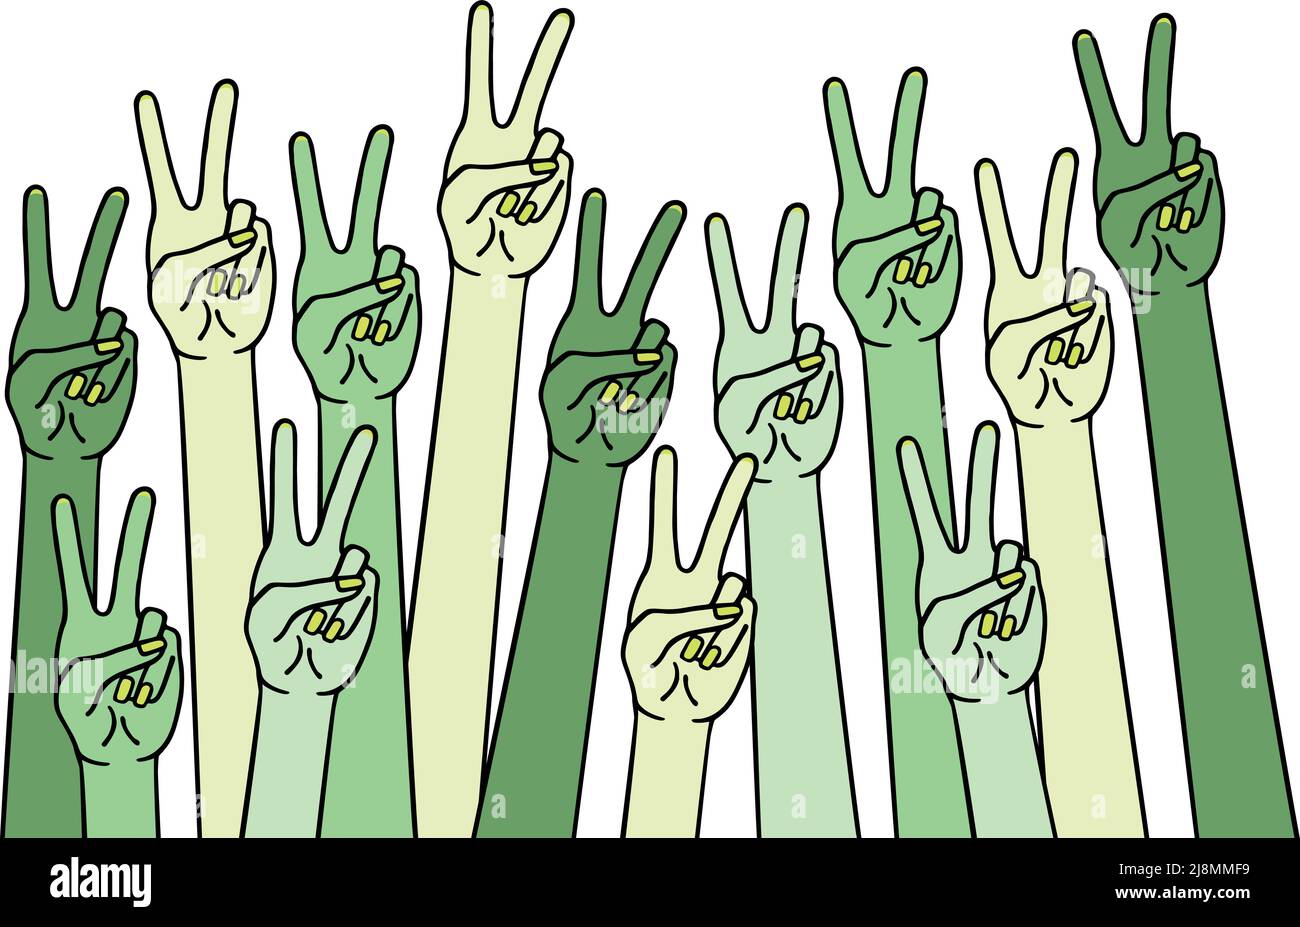 Mani umane con segno di pace, simbolo di vittoria, banner per il giorno della terra, illustrazione vettoriale, disegno a mano Illustrazione Vettoriale